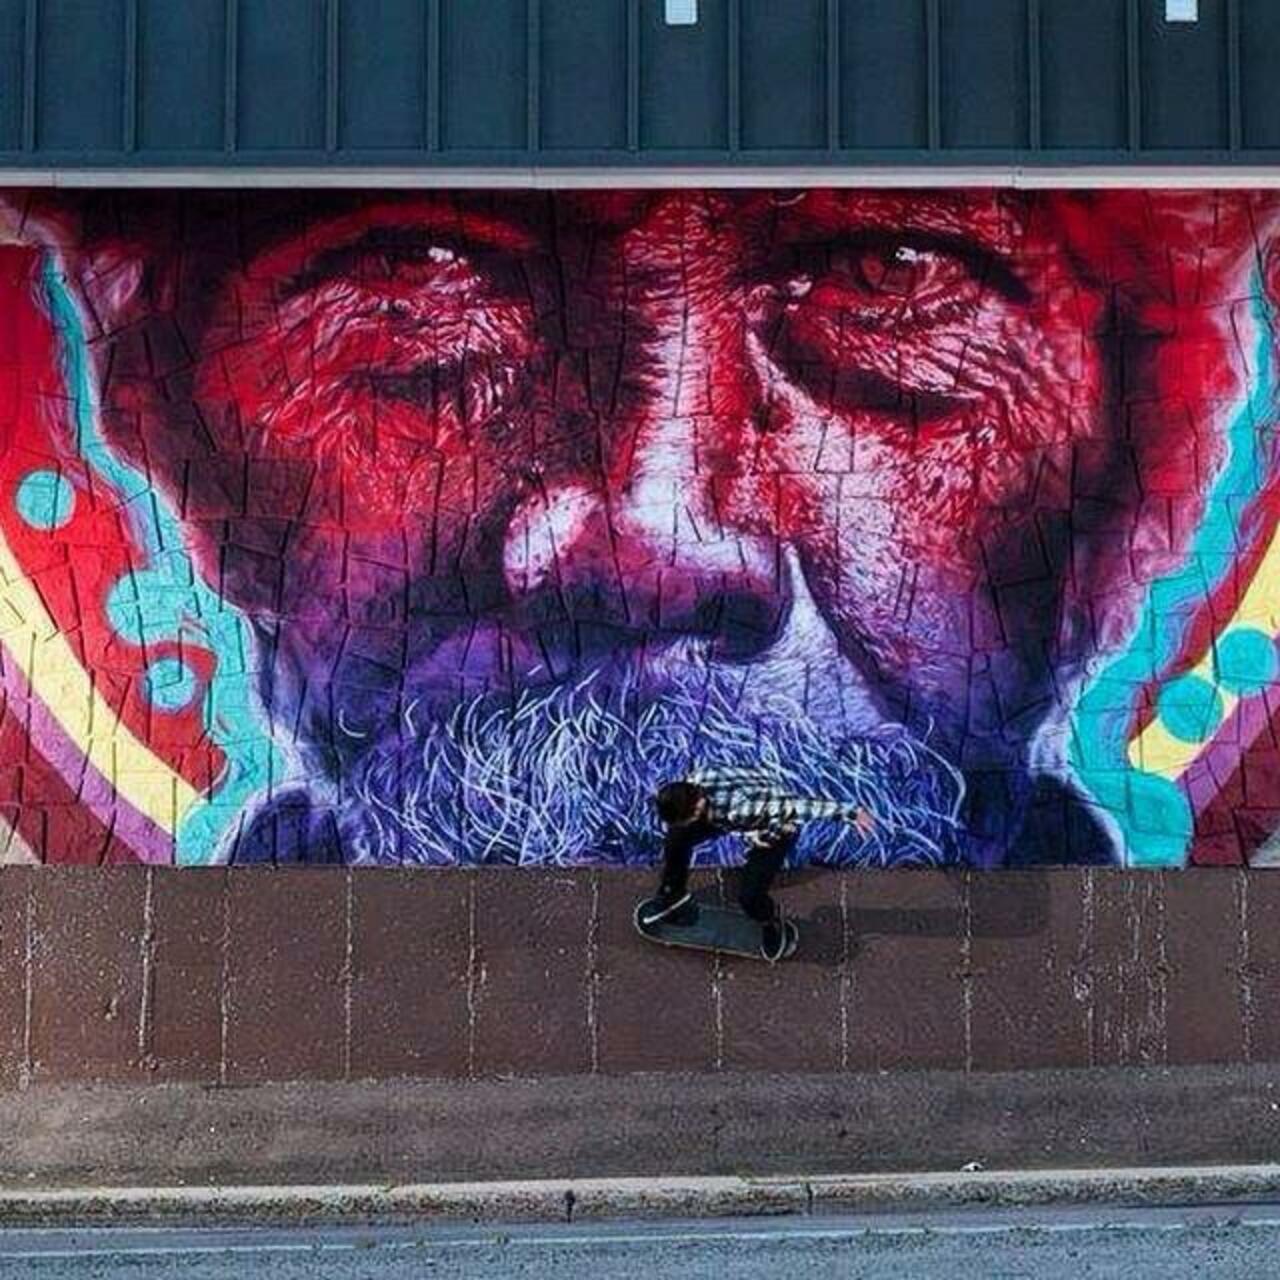 From Montcon, Canada, Kevin Ledo's class Street Art portrait 

#art #mural #graffiti #streetart http://t.co/2vzAoHd21z